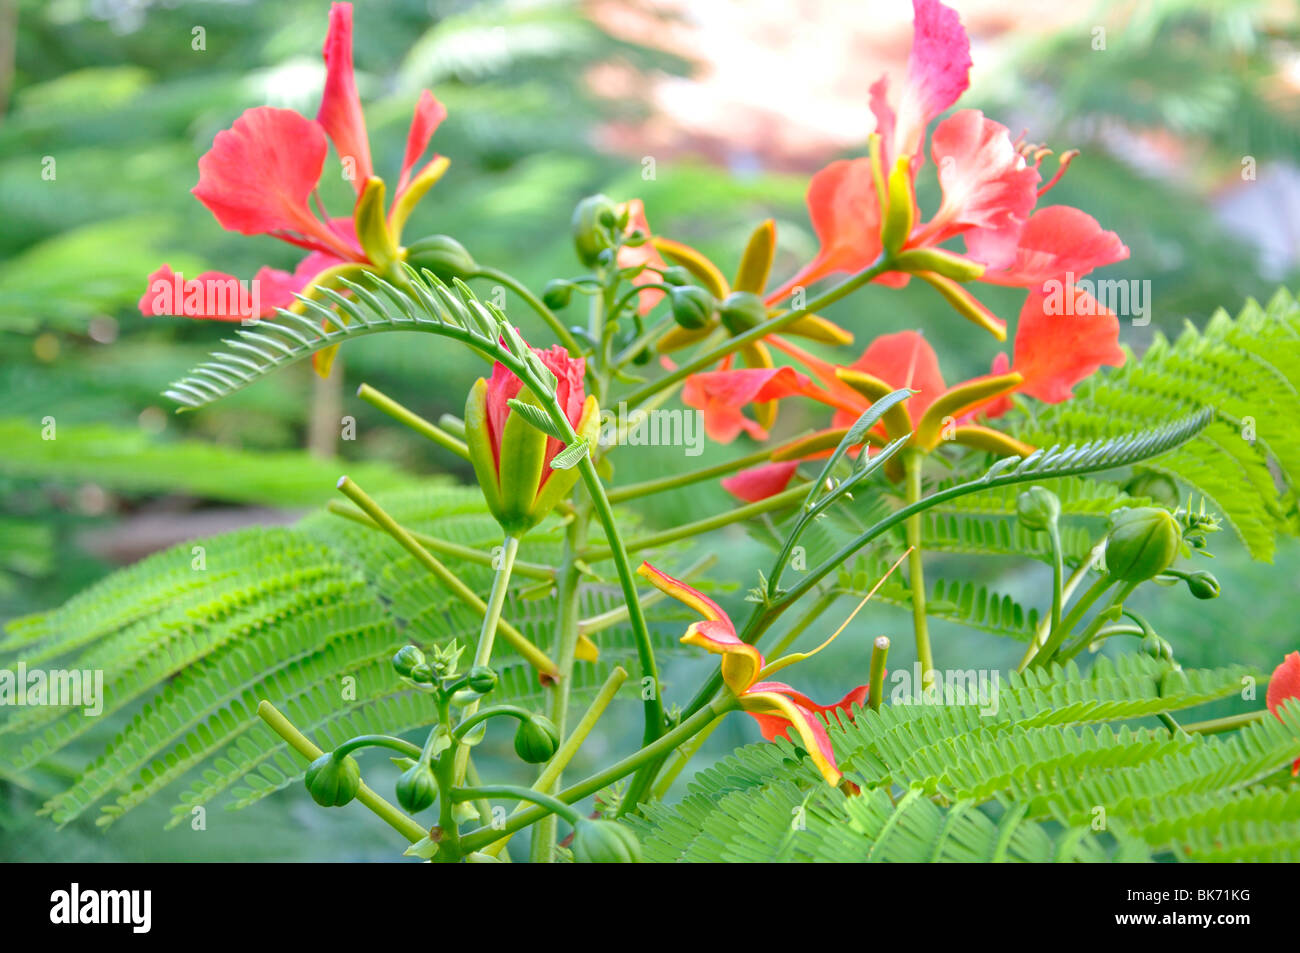 Gulmohar Flower White Background Gulmohar Tree Stock Photo 780178075 |  Shutterstock